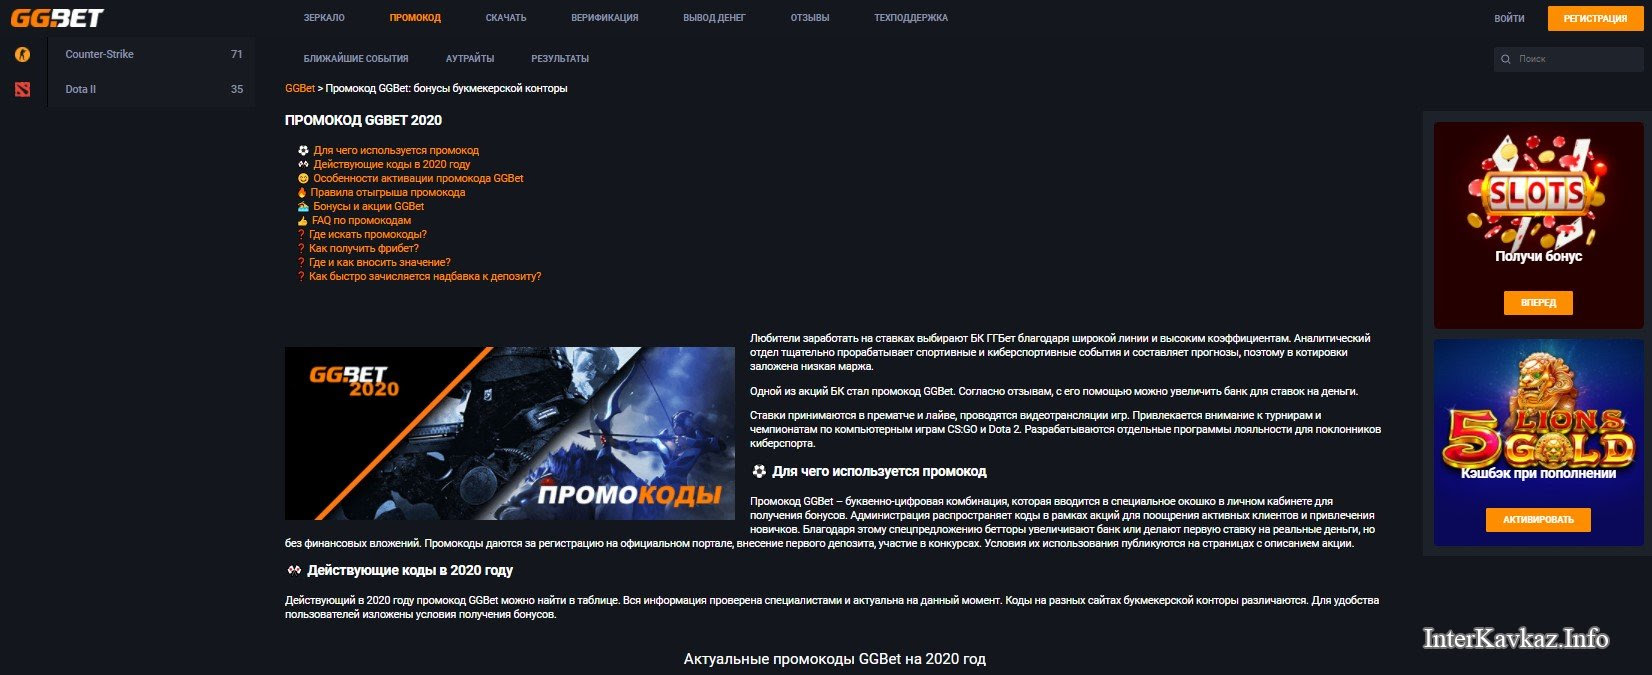 Ставки На Киберспорт Gg Bet в‰Ј Букмекерская контора GGBet.ru – ставки на киберспорт в€–